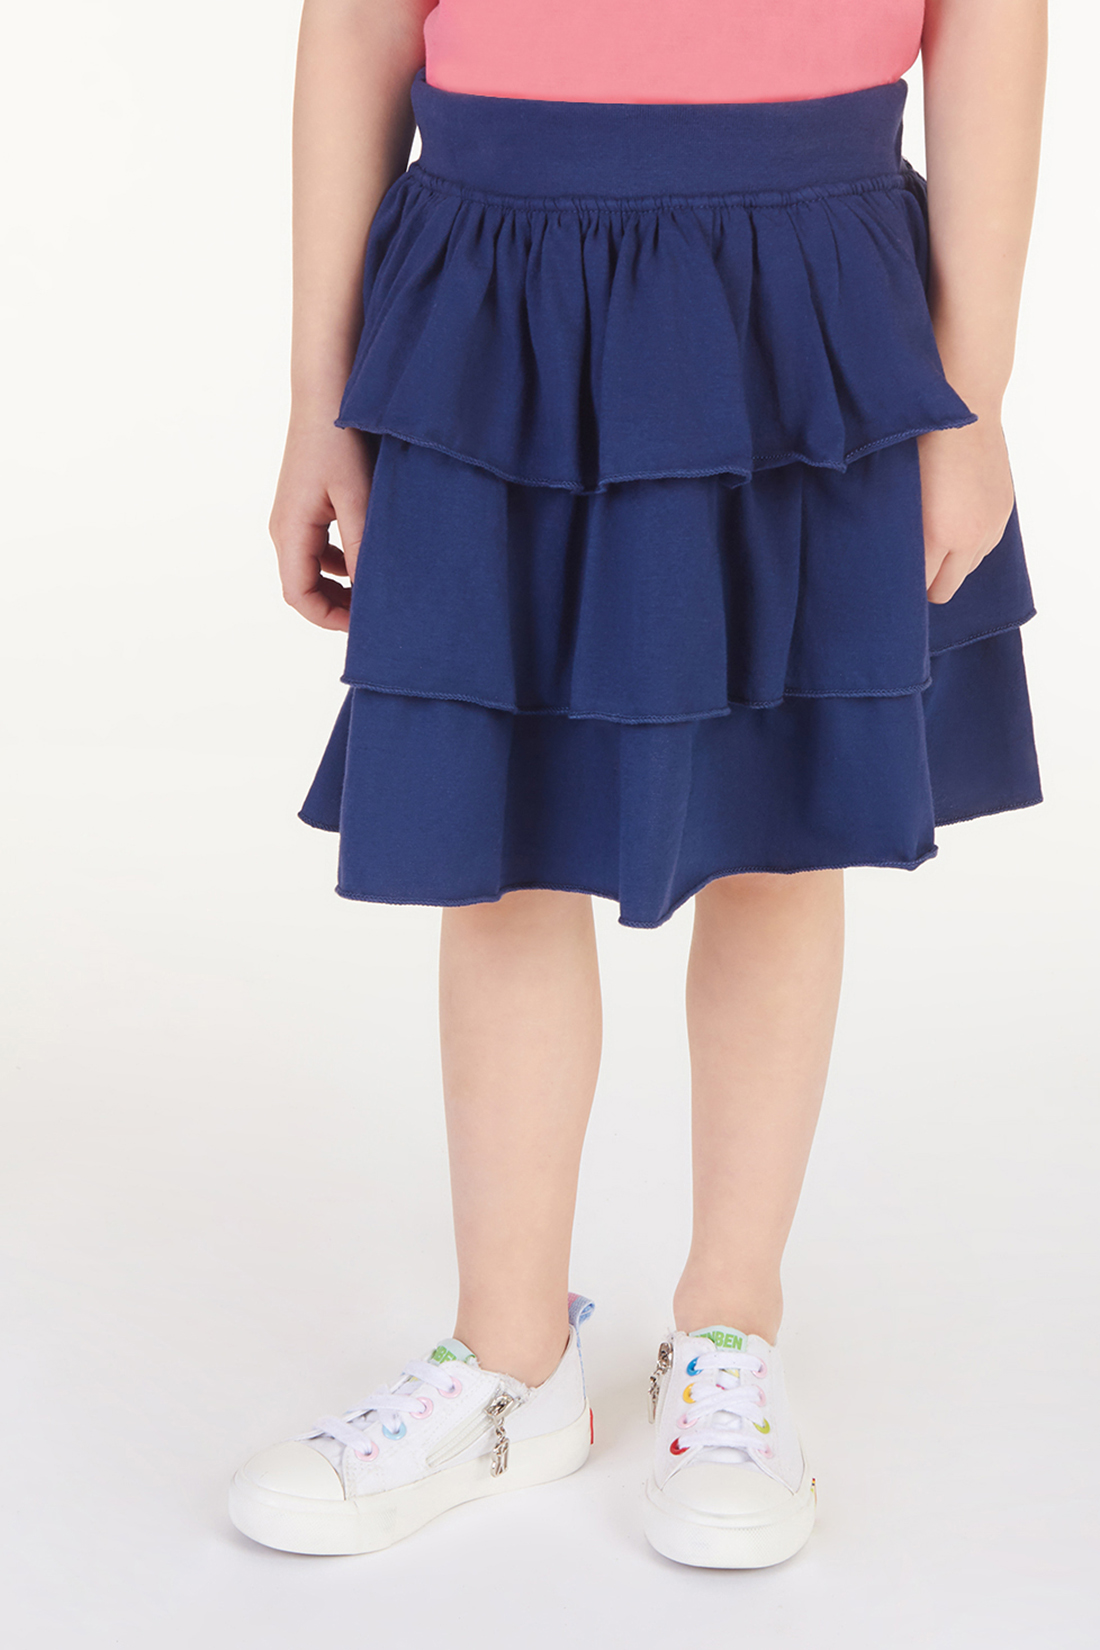 Юбка для девочки (арт. baon BK478004), размер 98-104, цвет синий Юбка для девочки (арт. baon BK478004) - фото 1